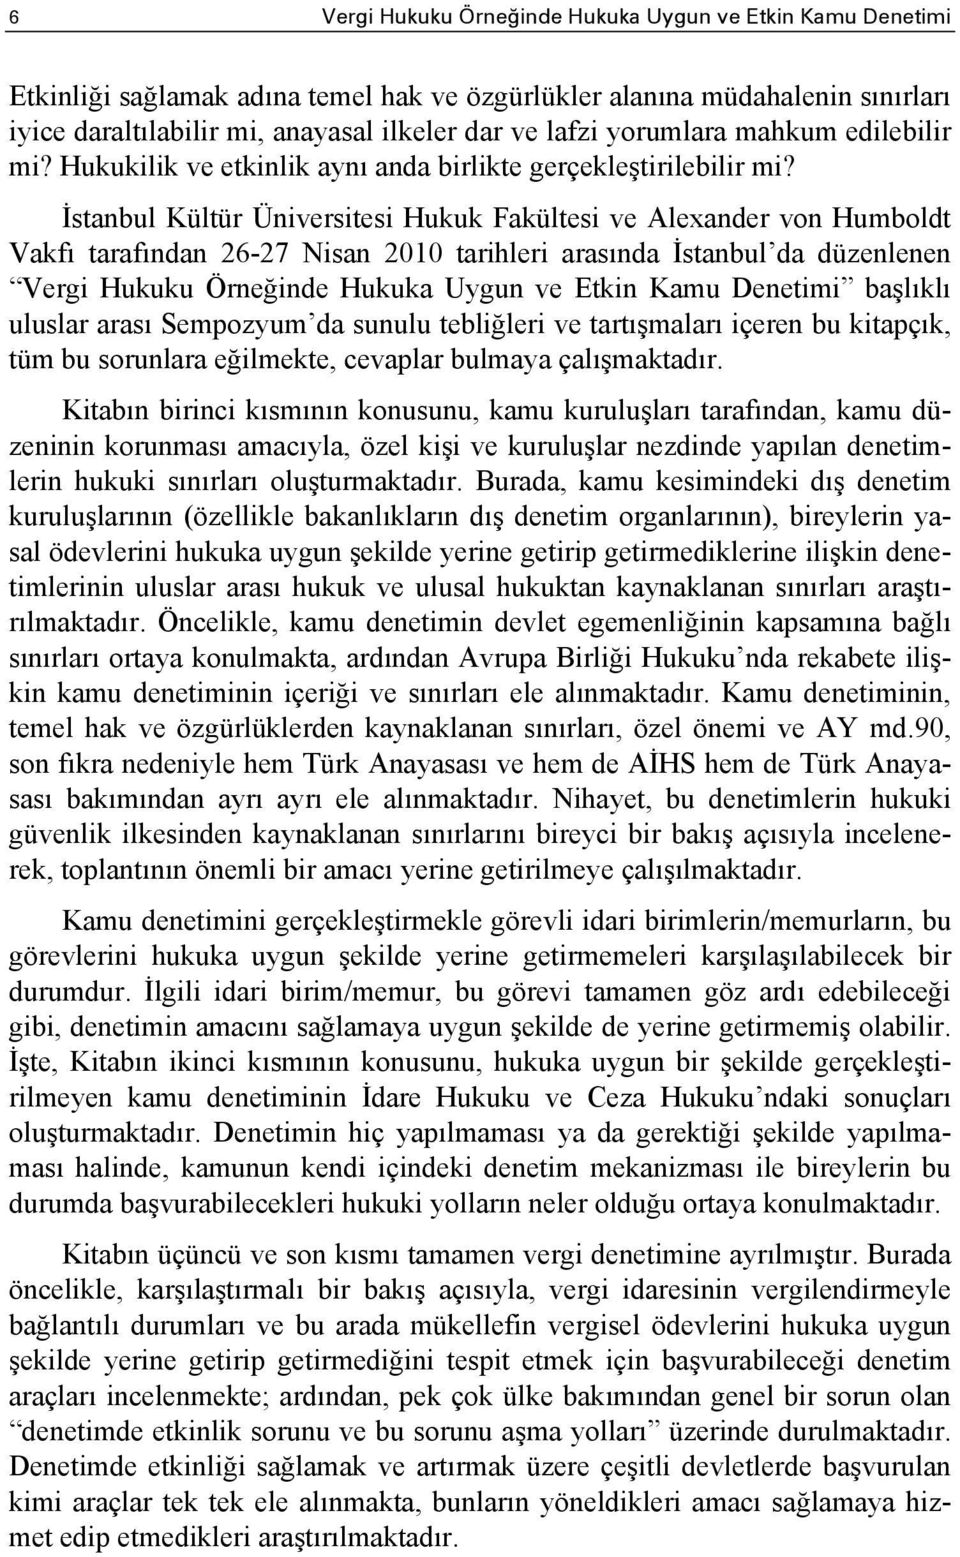 İstanbul Kültür Üniversitesi Hukuk Fakültesi ve Alexander von Humboldt Vakfı tarafından 26-27 Nisan 2010 tarihleri arasında İstanbul da düzenlenen Vergi Hukuku Örneğinde Hukuka Uygun ve Etkin Kamu